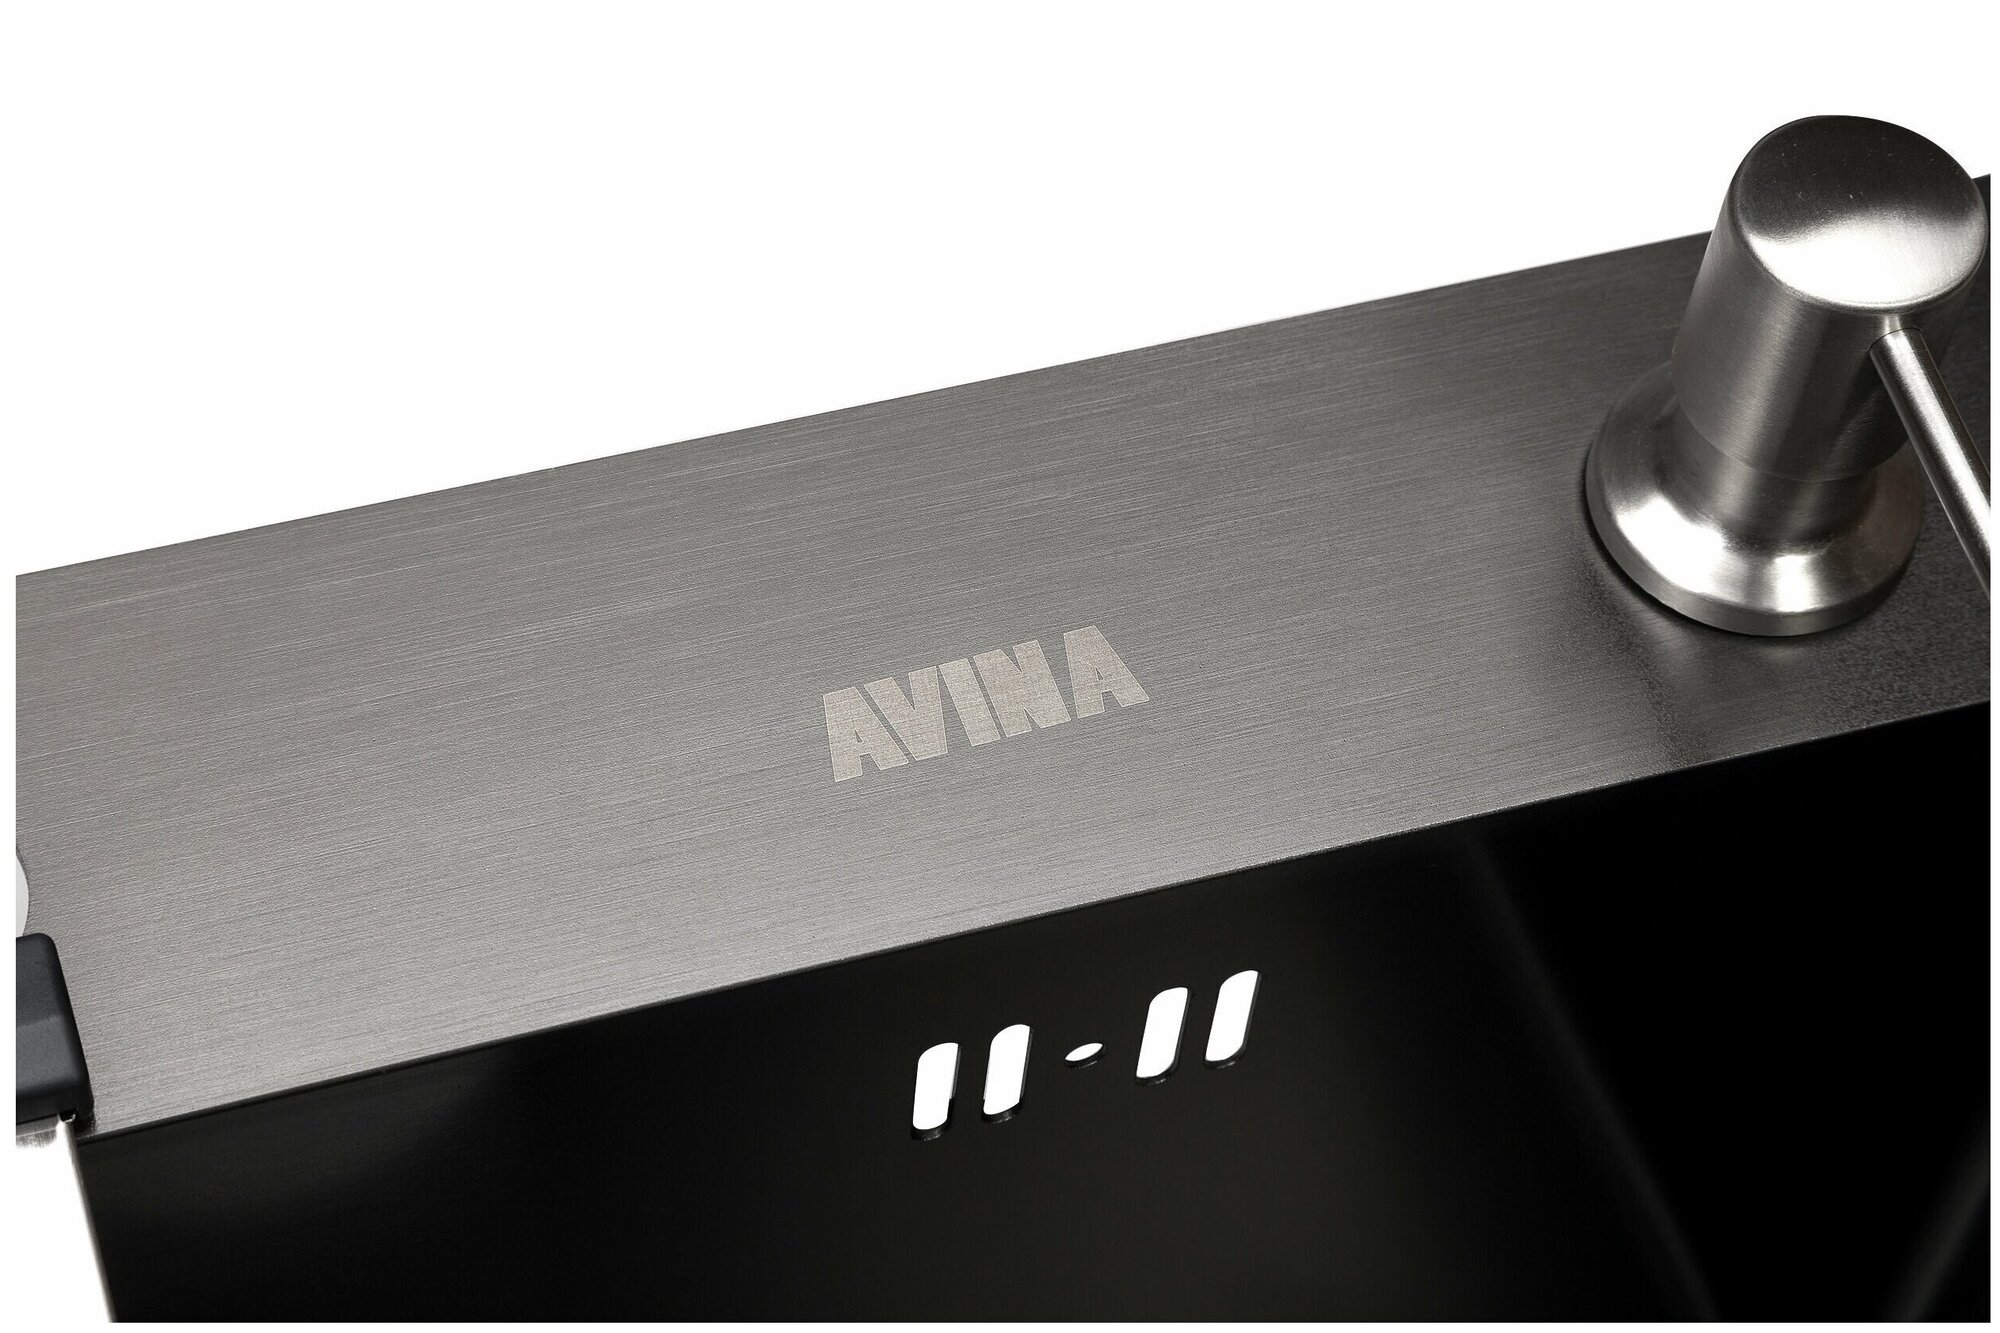 Кухонная мойка AVINA 7048 black, из нержавеющей стали, толщина 3мм*1,5 мм. Дозатор, коландер, сифон в комплекте. Глубина мойки 220 мм. - фотография № 2